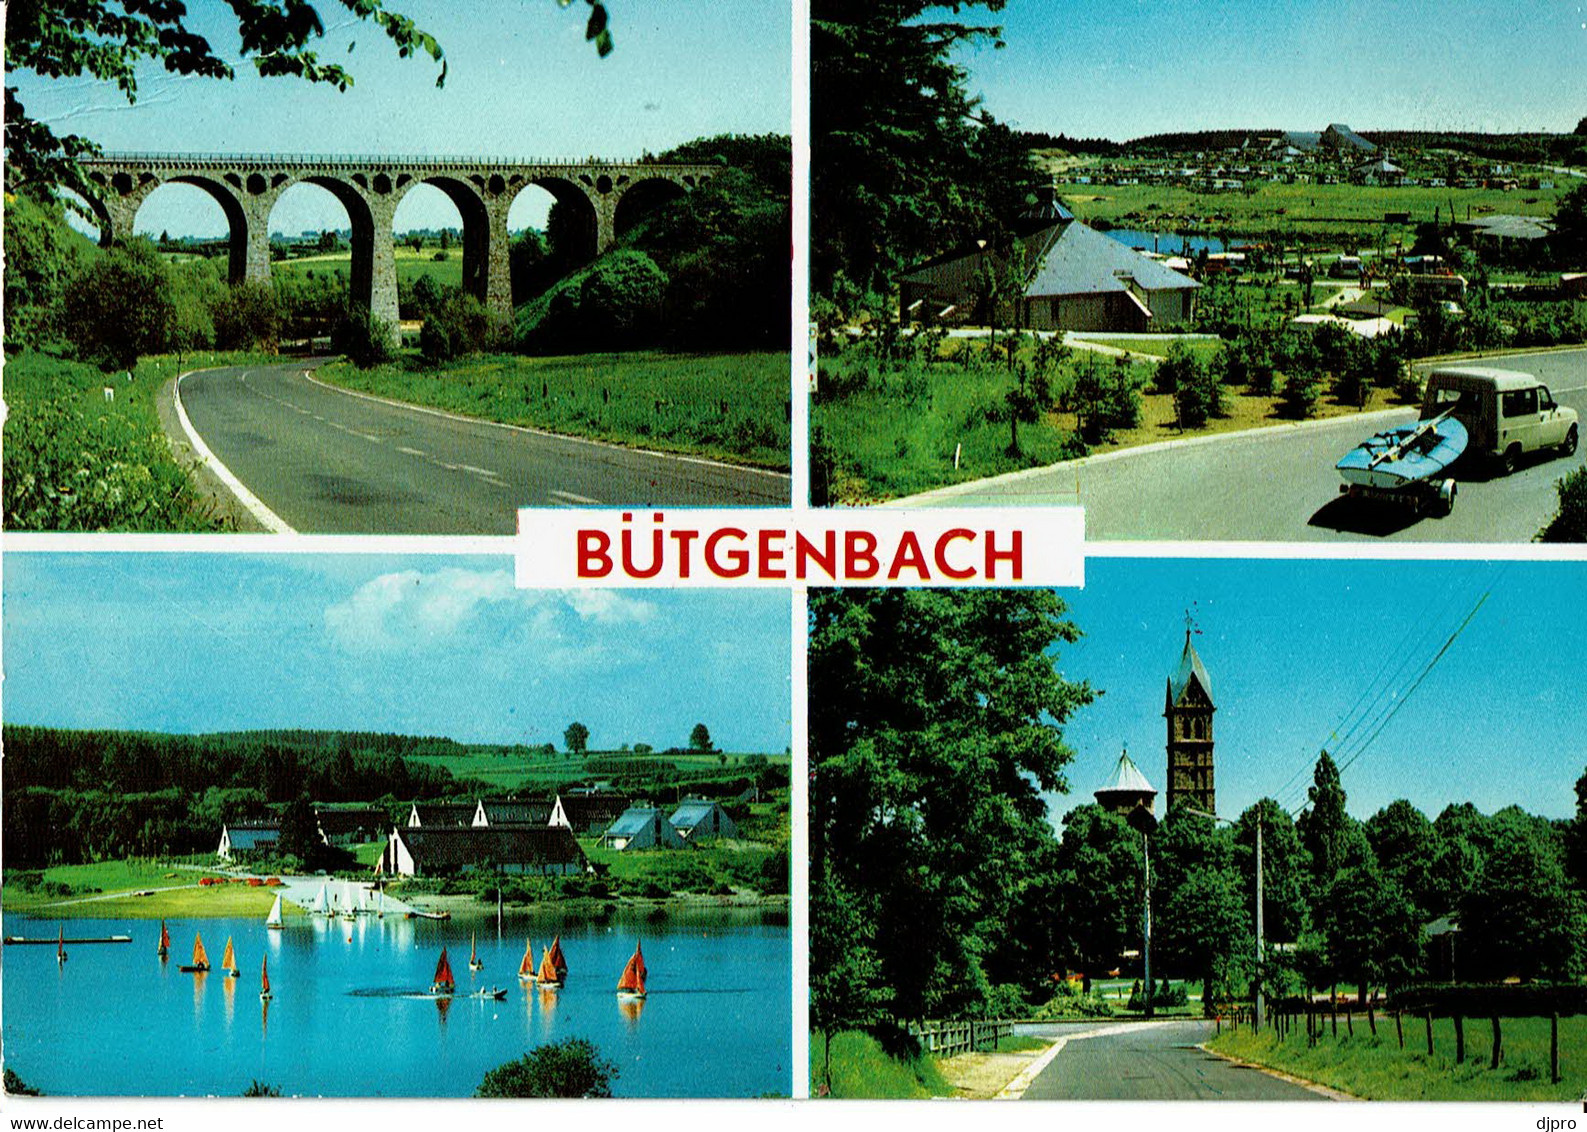 Bütgenbach - Butgenbach - Butgenbach